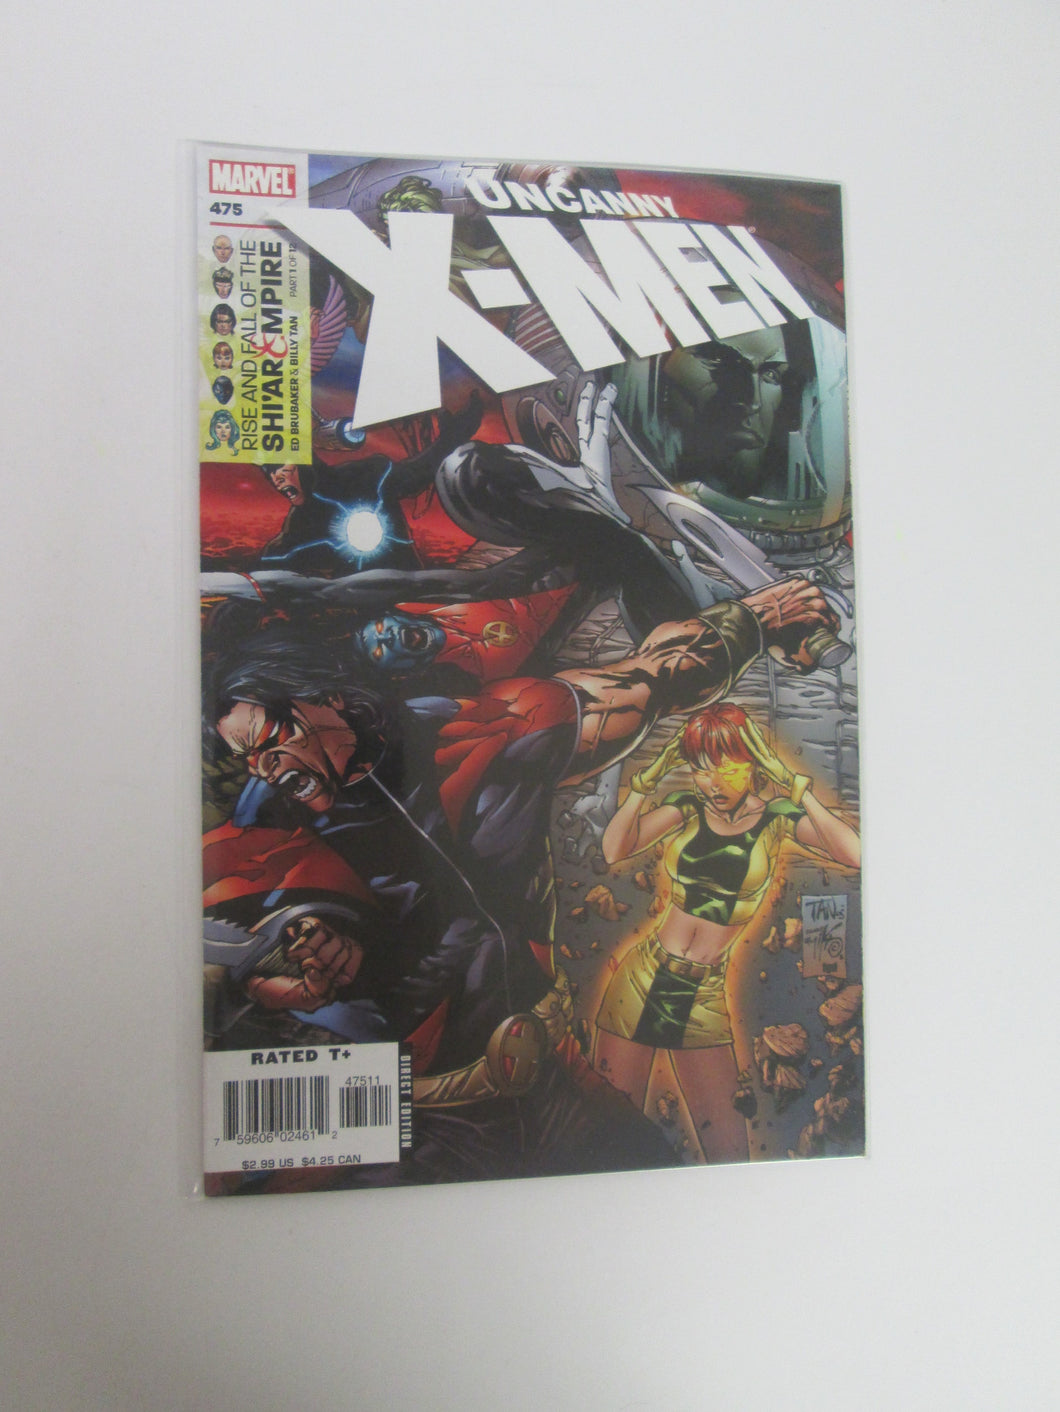 Uncanny X-Men # 475 (Marvel)